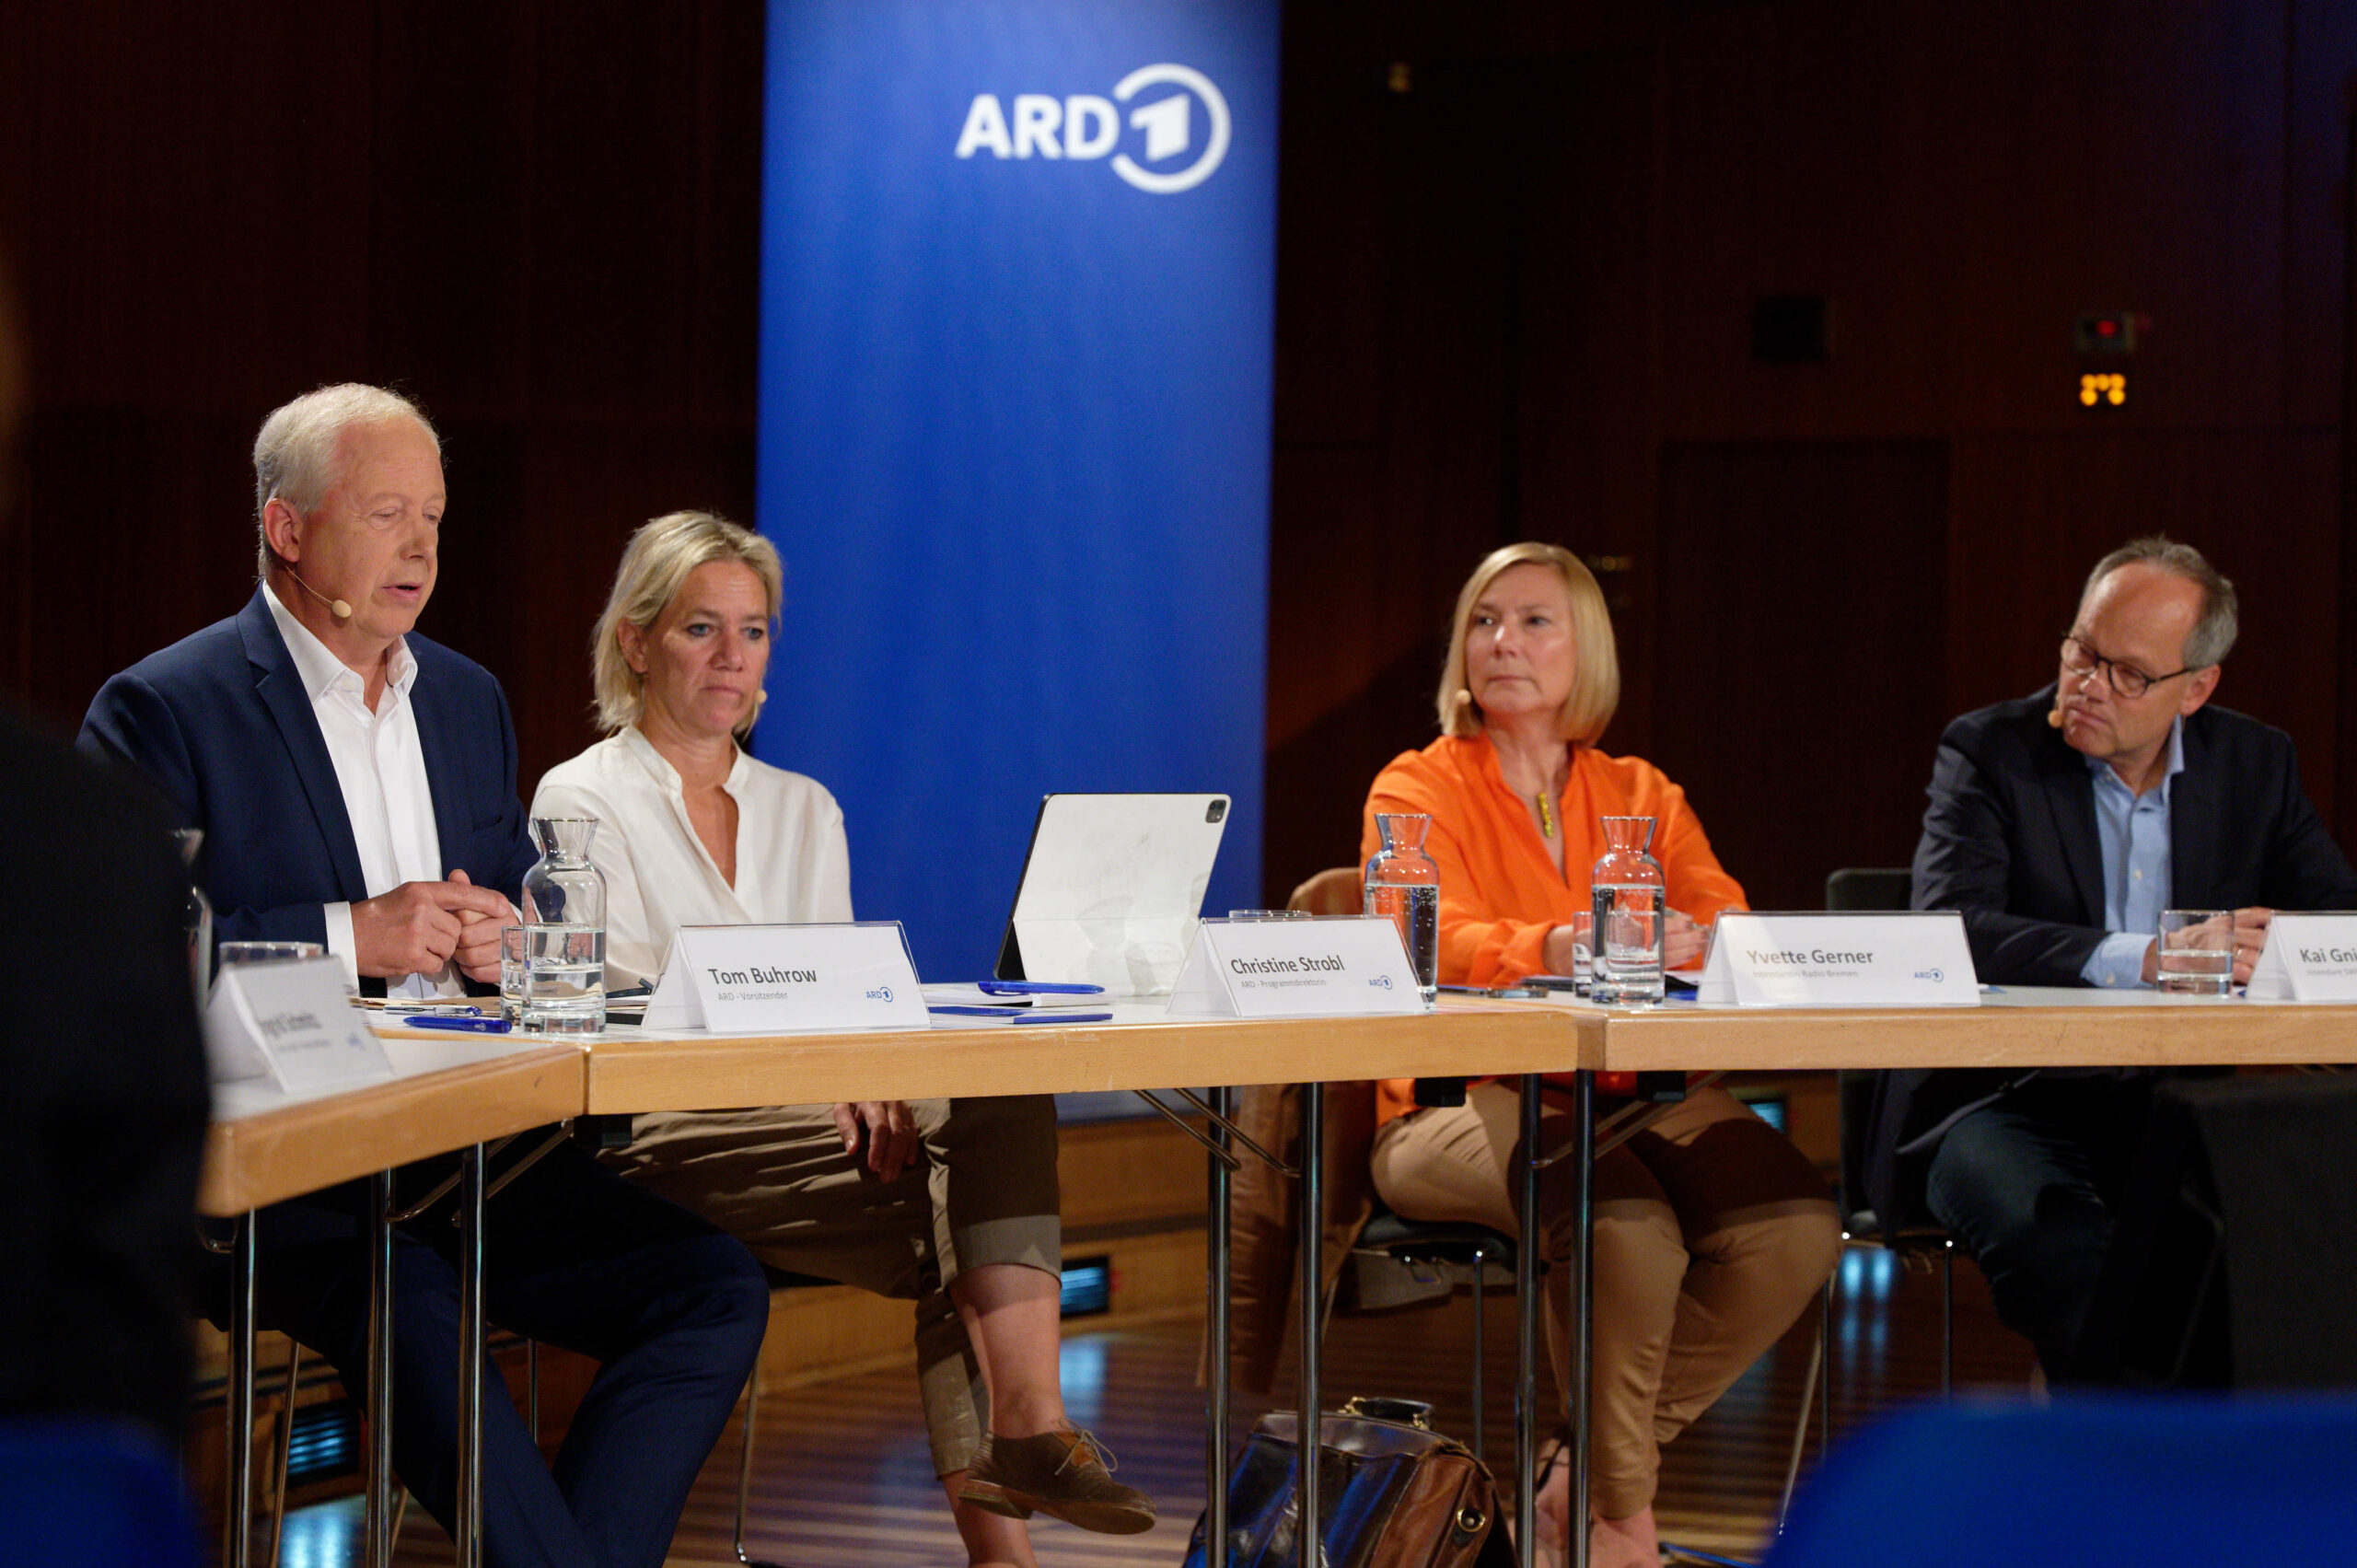 Tom Buhrow, aktueller ARD-Vorsitzender und WDR-Intendant, Christine Strobl, ARD-Programmdirektorin, Yvette Gerner, Intendantin von Radio Bremen, und Kai Gniffke, SWR-Intendant und zukünftiger ARD-Vorsitzender, nehmen an einem Pressegespräch teil.